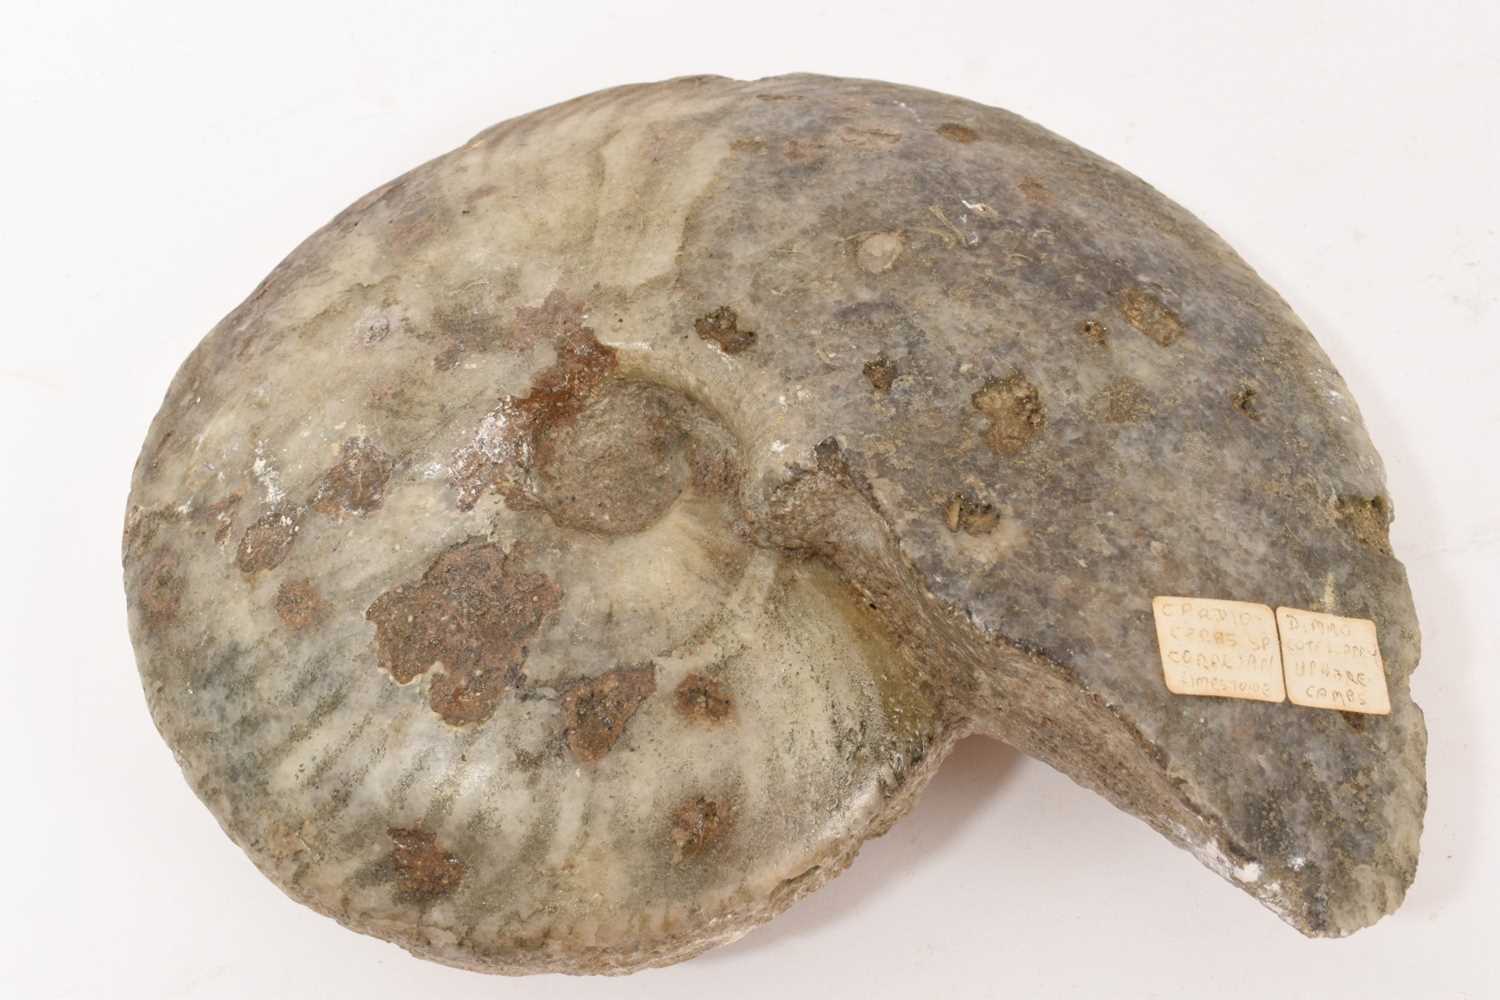 Large ammonite specimen - Cardioceras